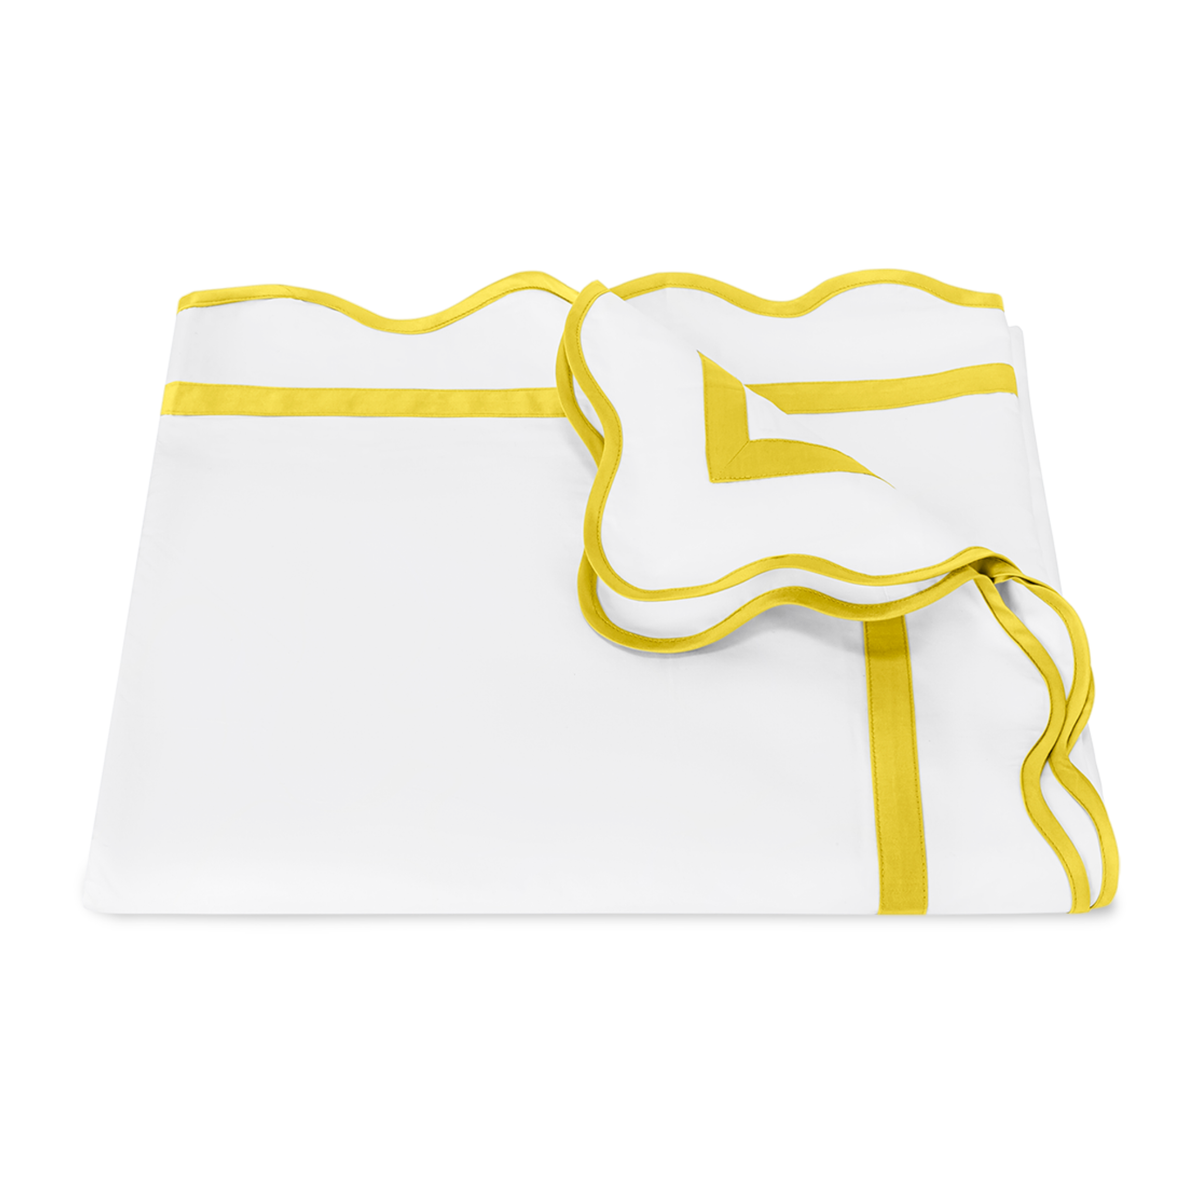 Folded Duvet Cover of Matouk Cornelia Bedding in Lemon Color